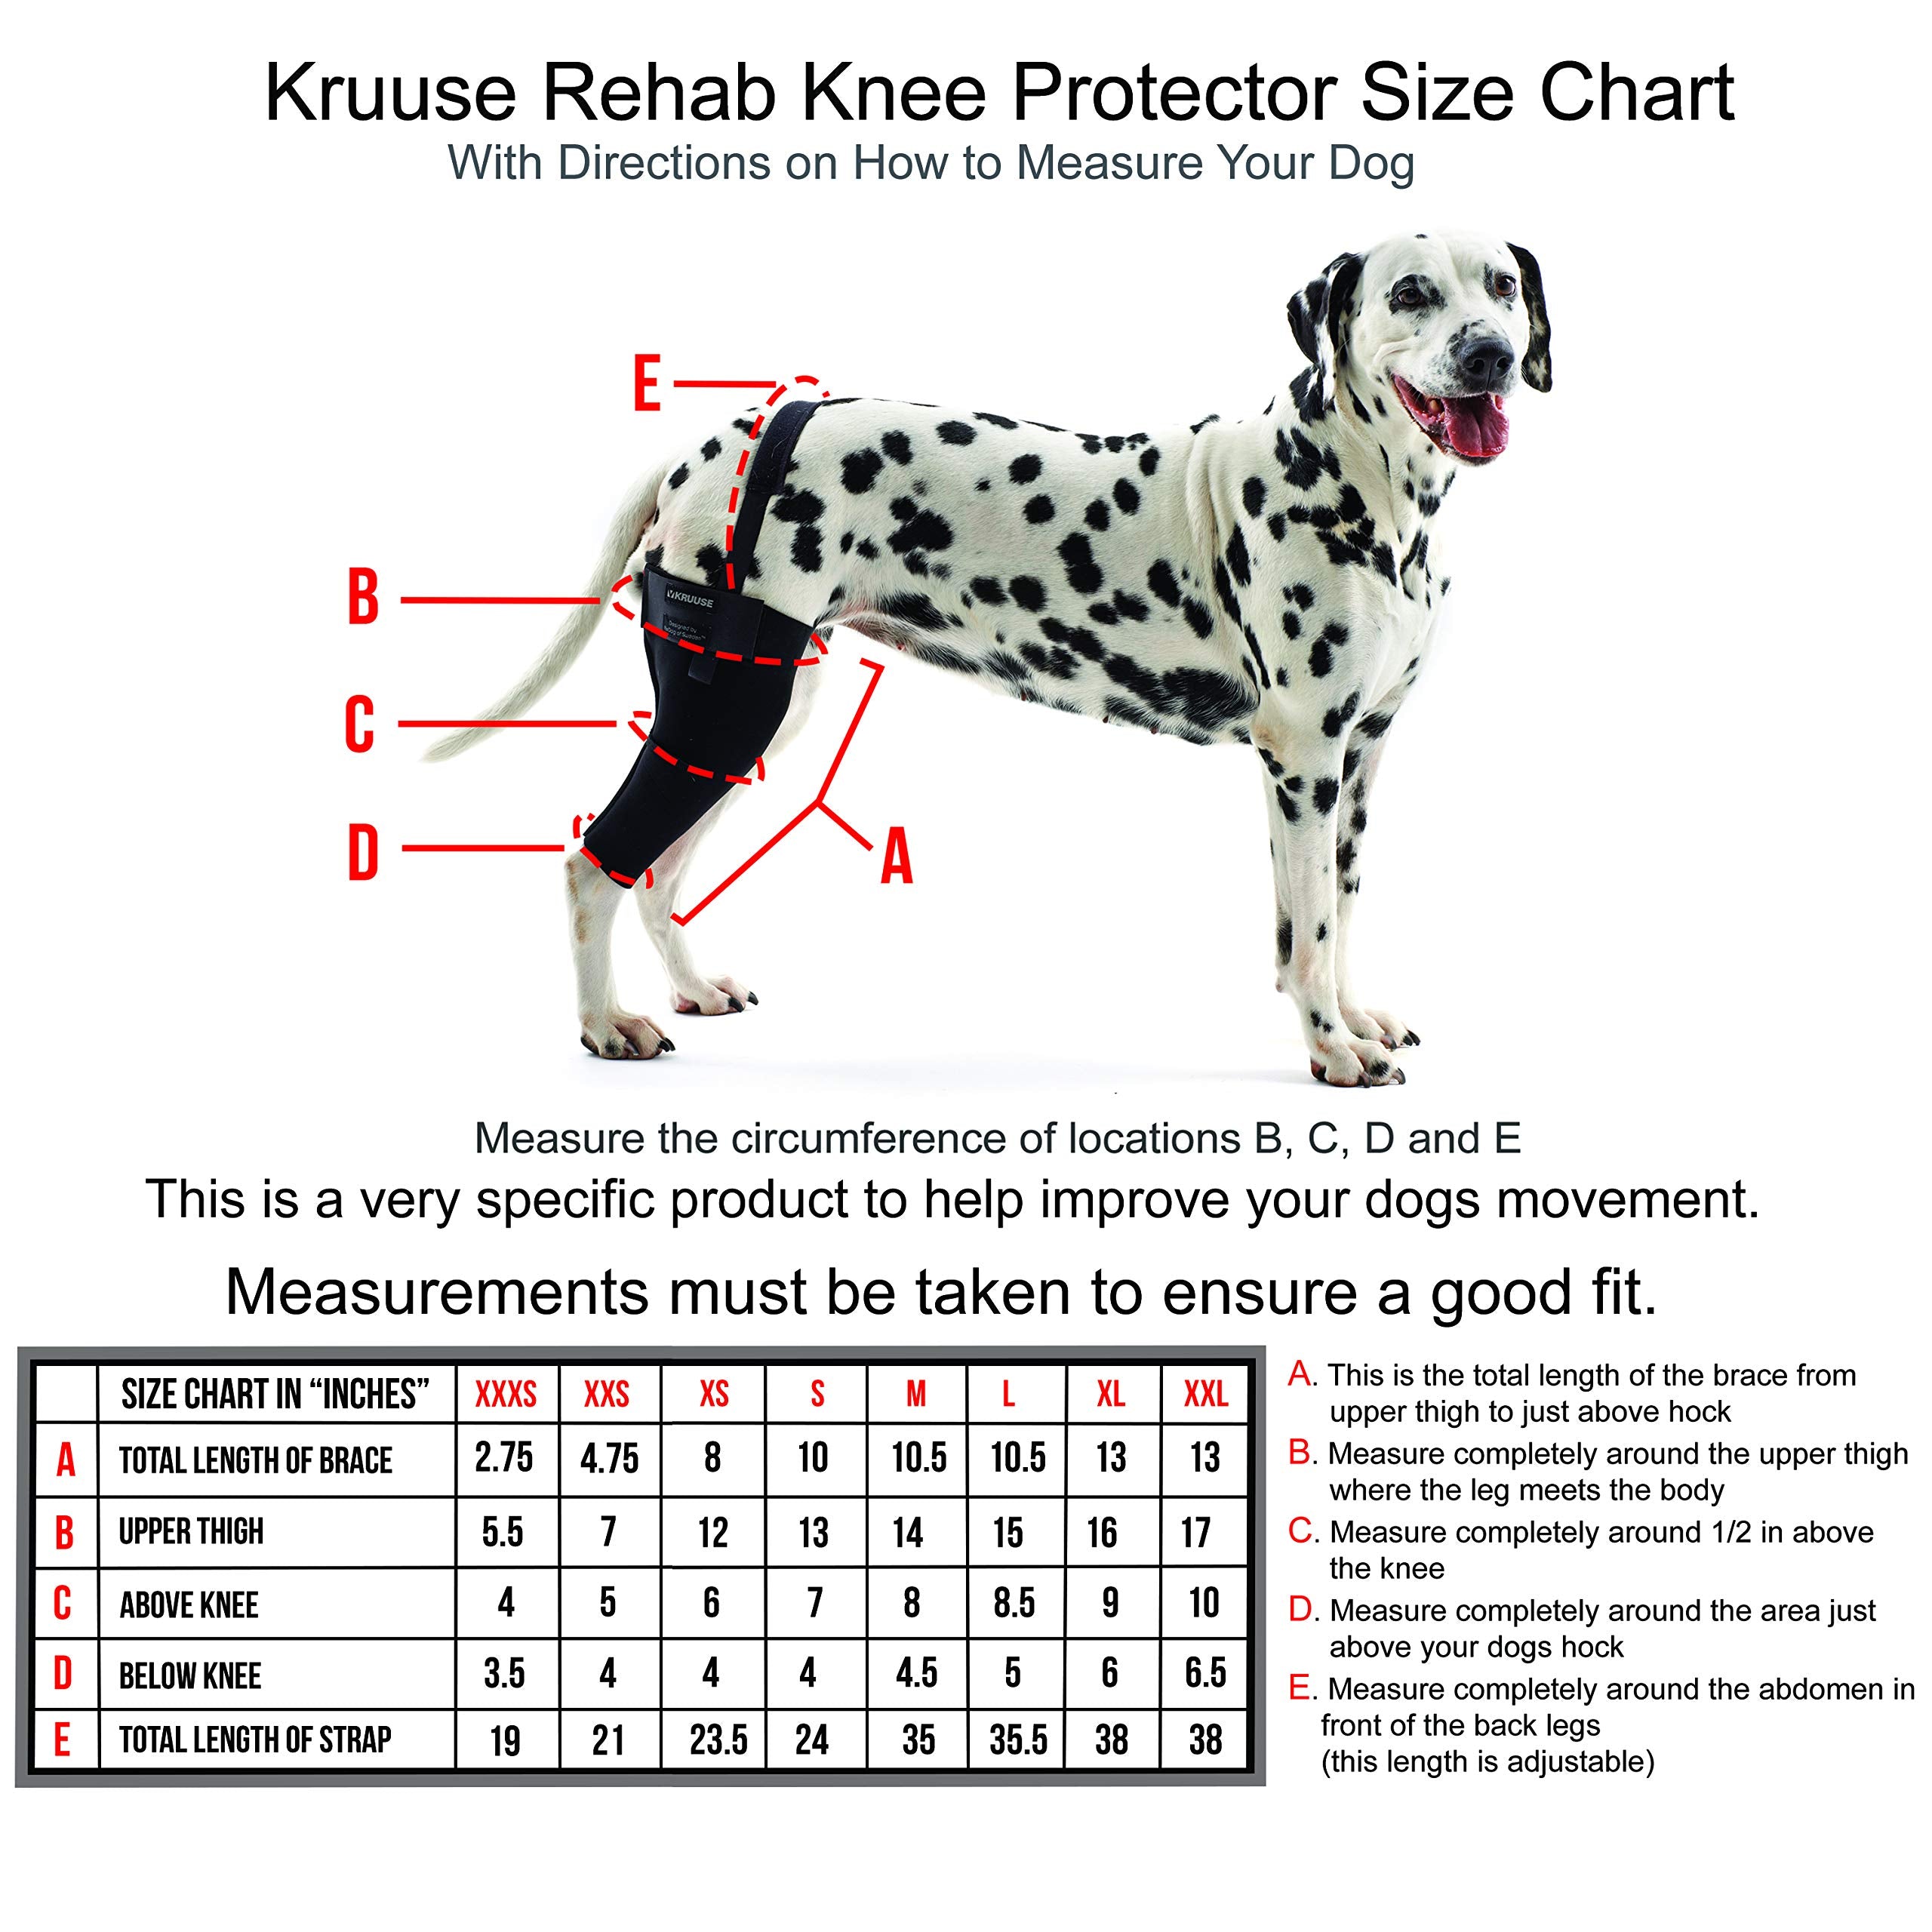 Kruuse Rehab Knee Protector